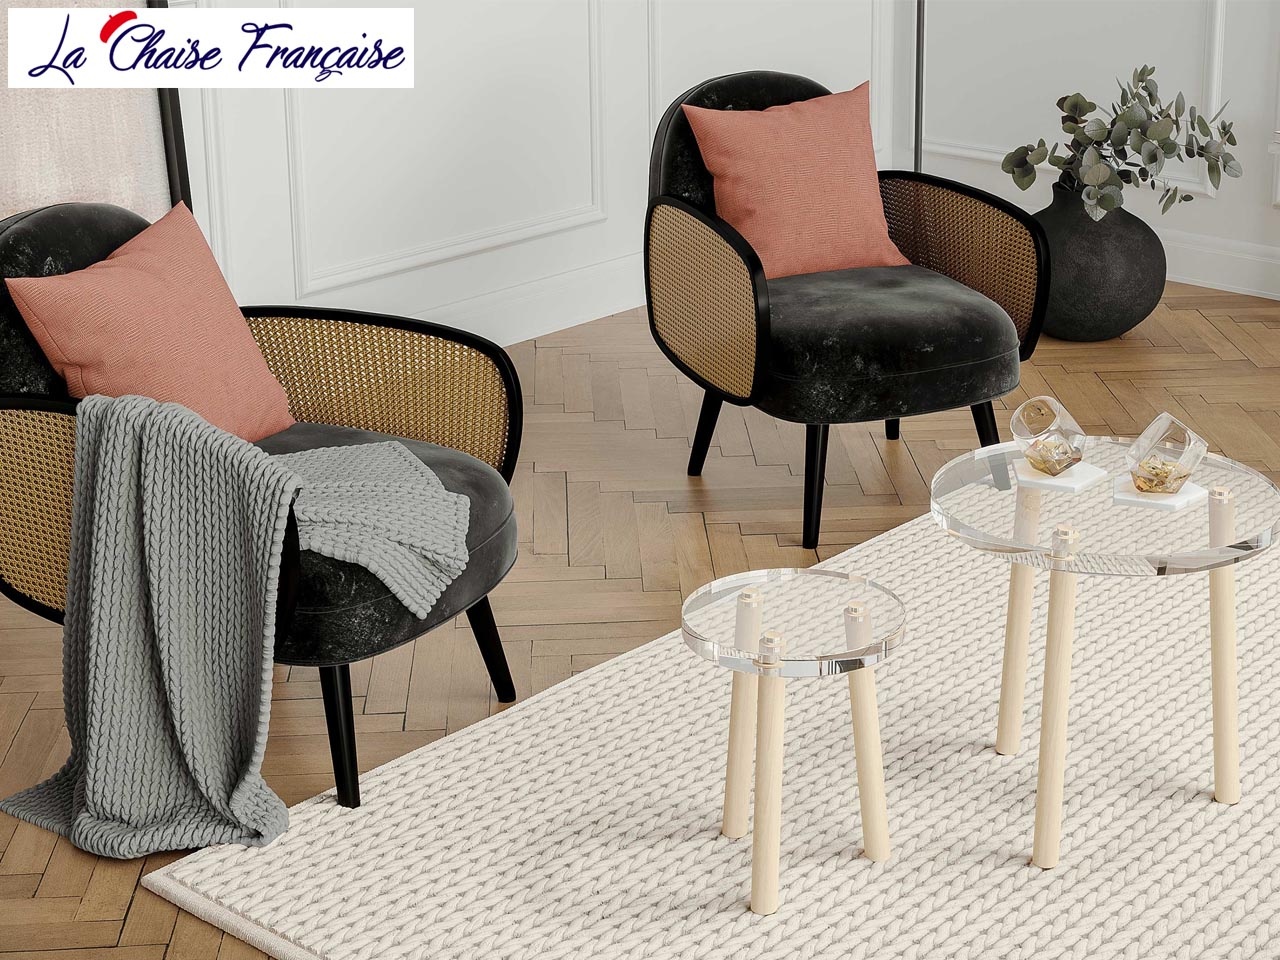 La Chaise Française s’inspire du mobilier d’antan pour une déco design et Made in France